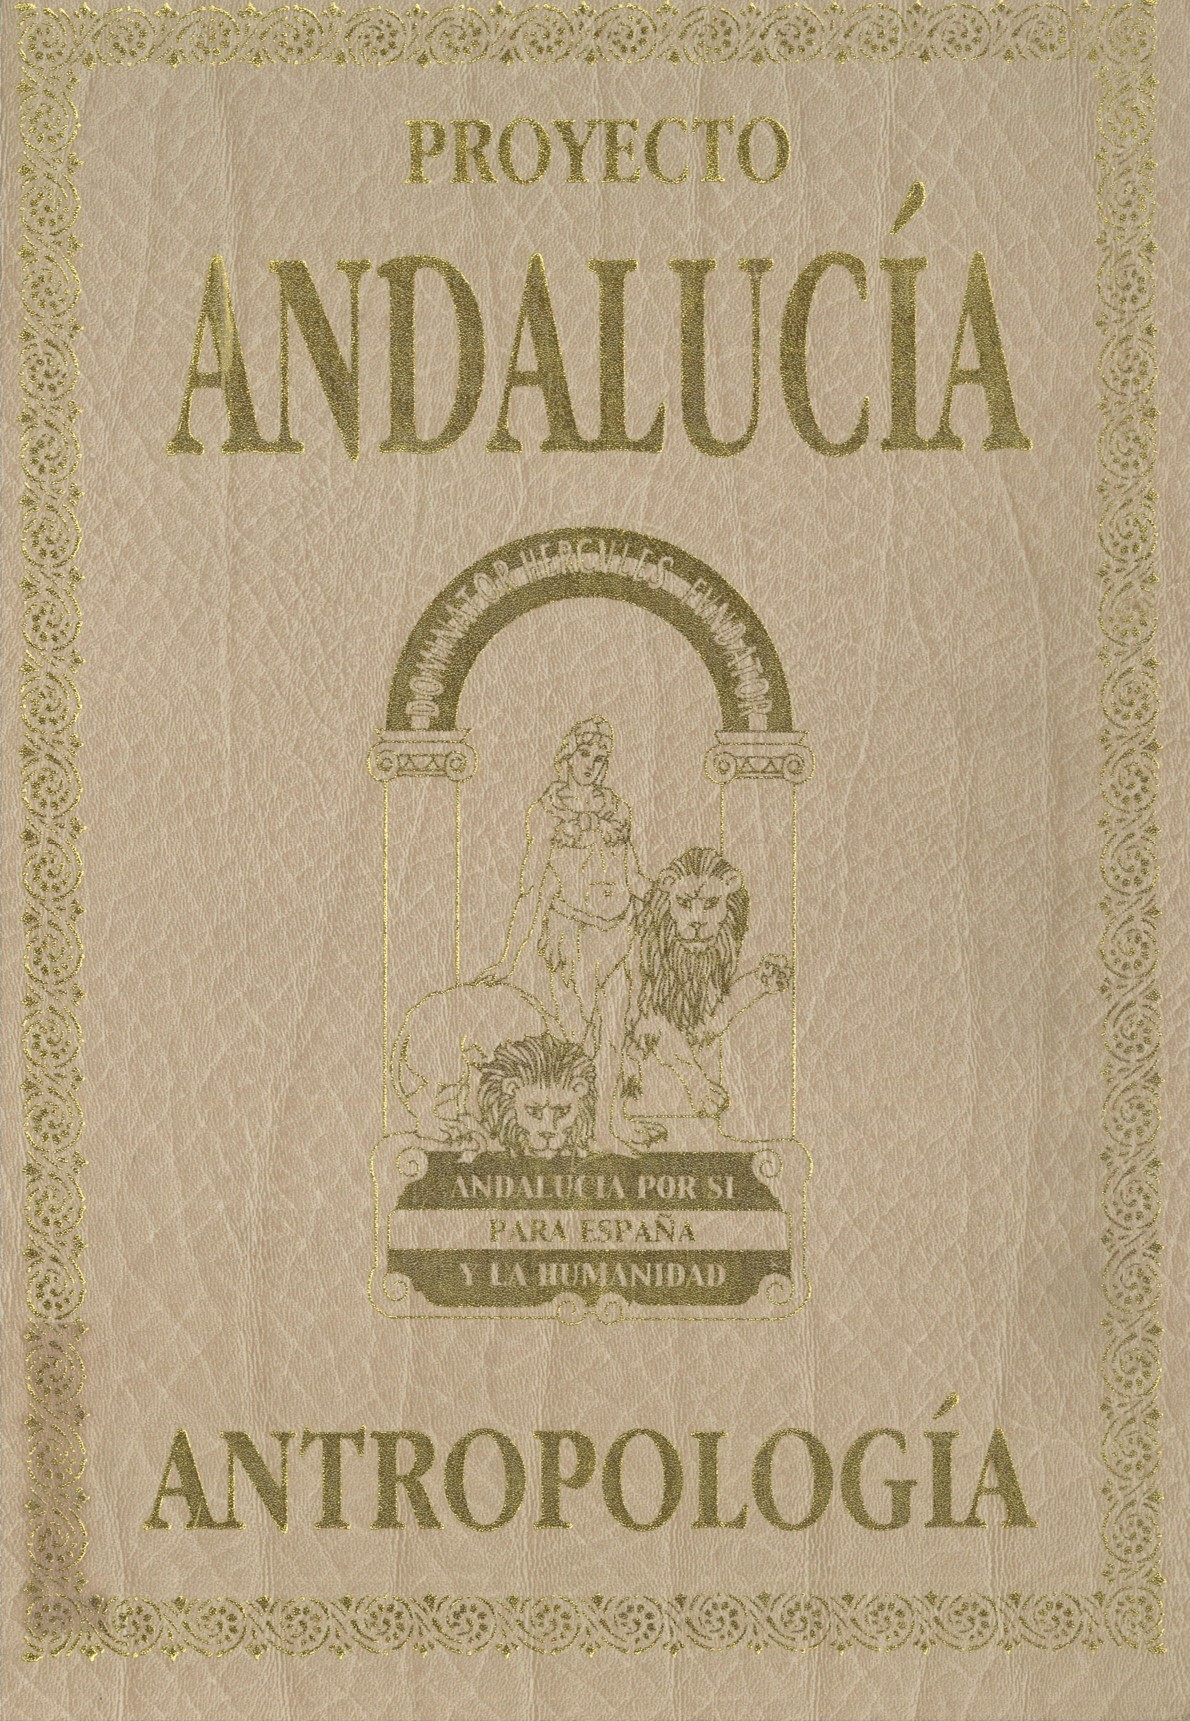 Imagen de portada del libro Proyecto Andalucía